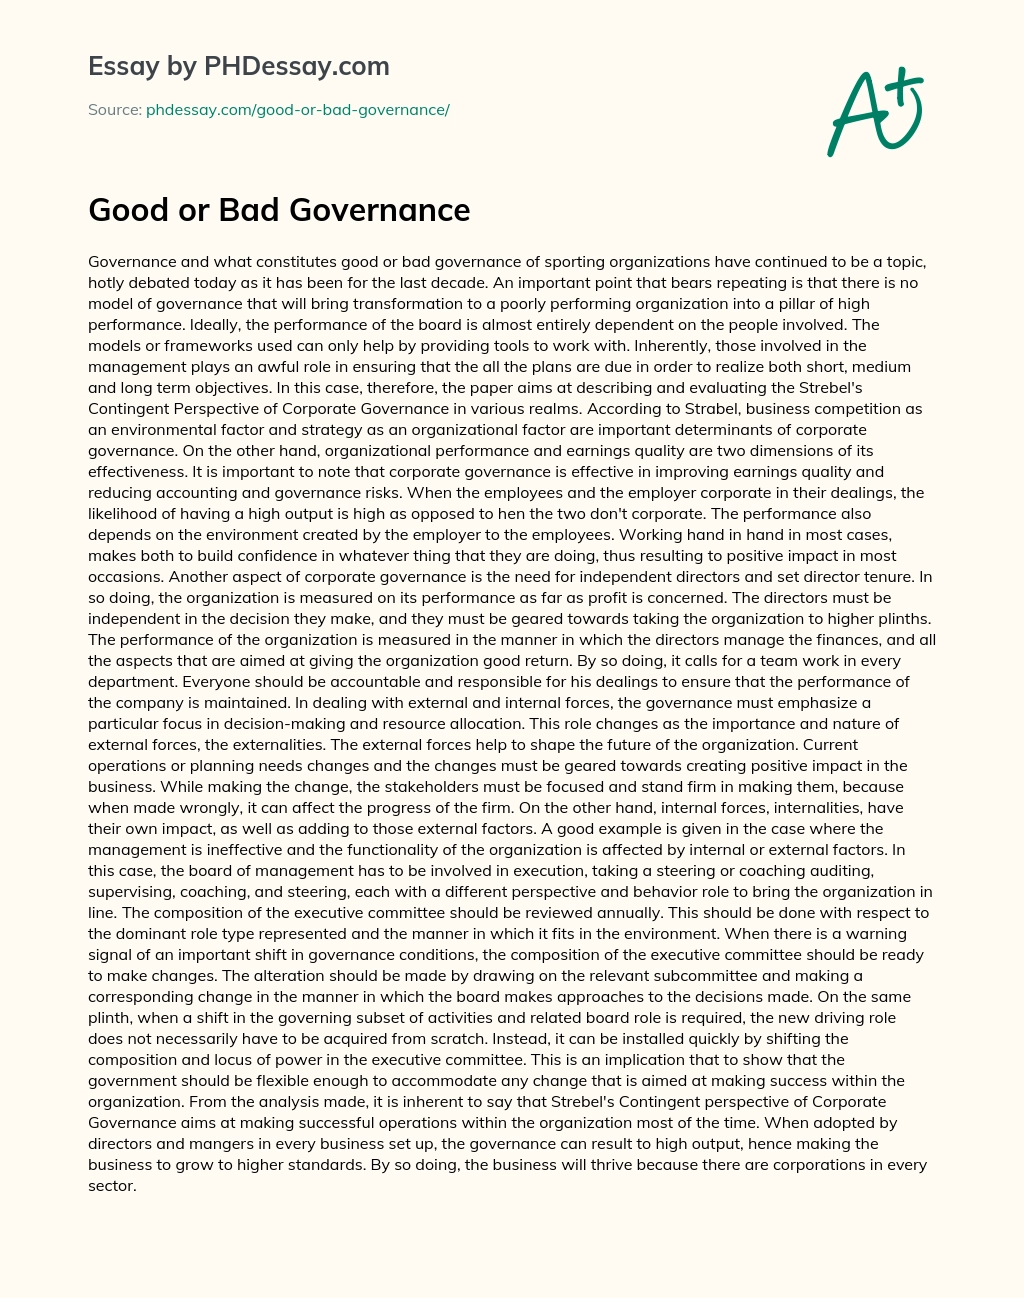 Good or Bad Governance essay